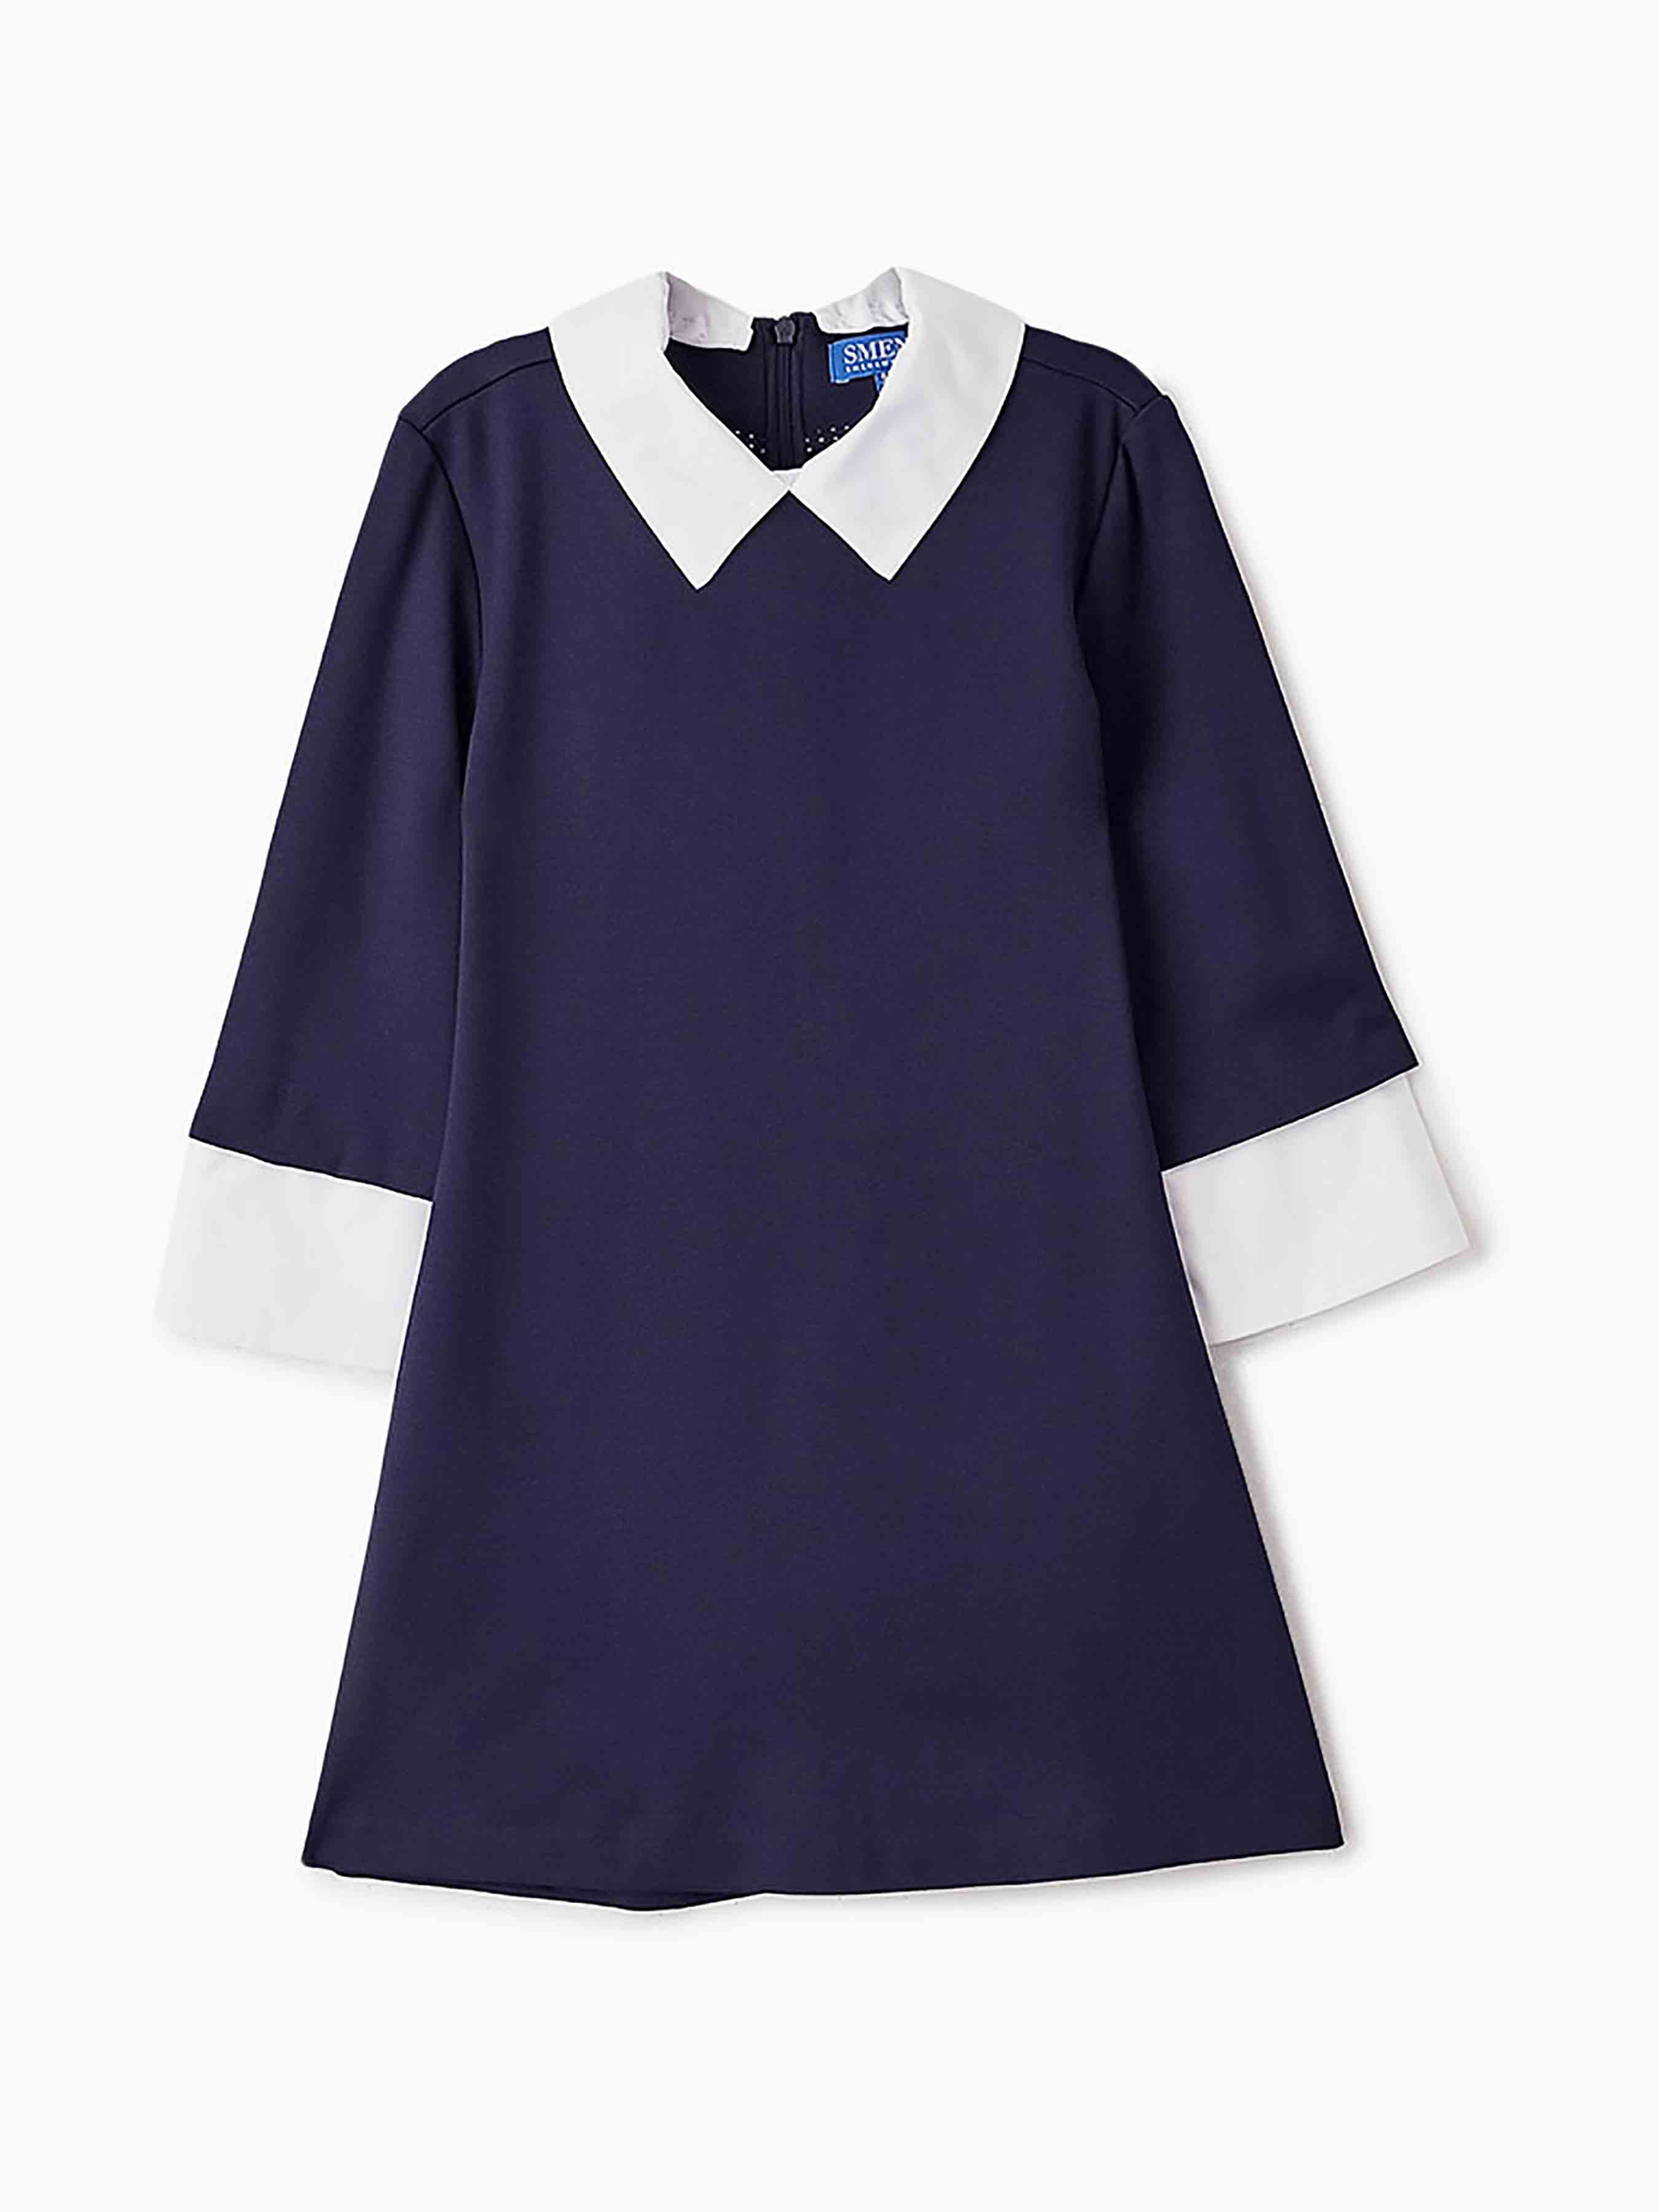 Школьное платье для девочки синее 12816-12817